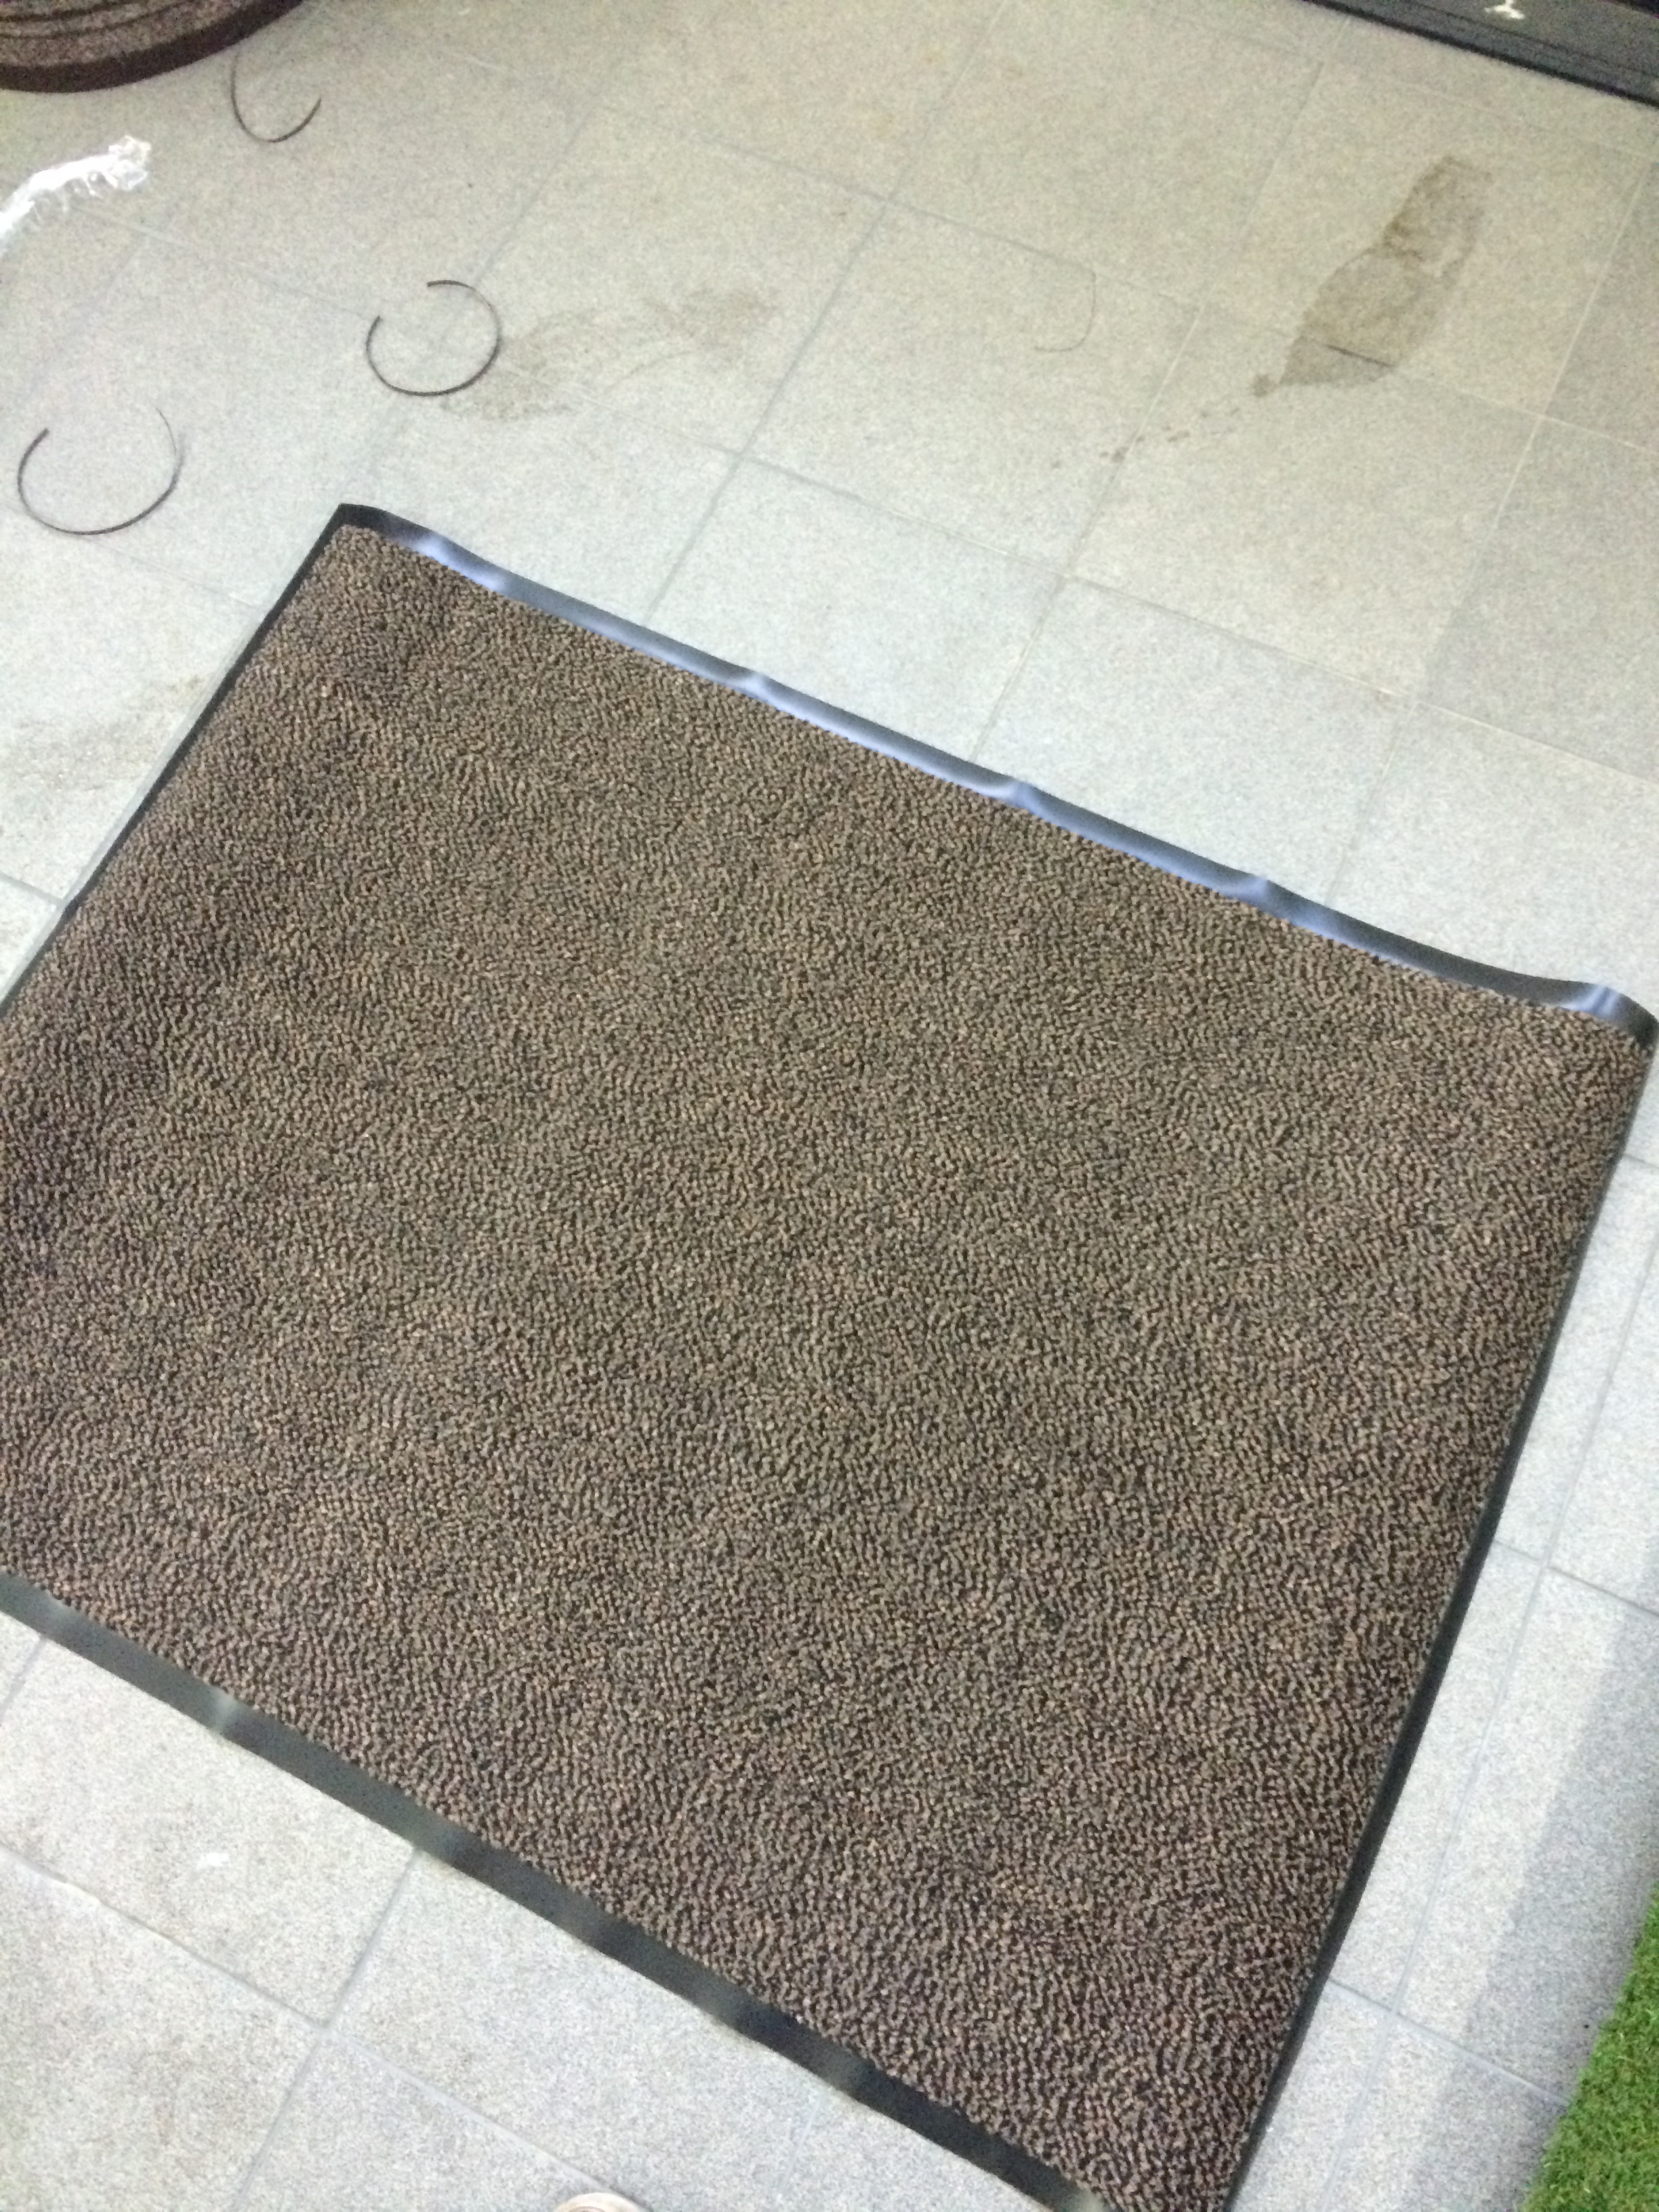 Droogloopmat cm x 90 cm € 17,50 – Langenbach tapijt De goedkoopste leverancier van karpetten en vloerkleden. Kuntgras kunst gras voordelig